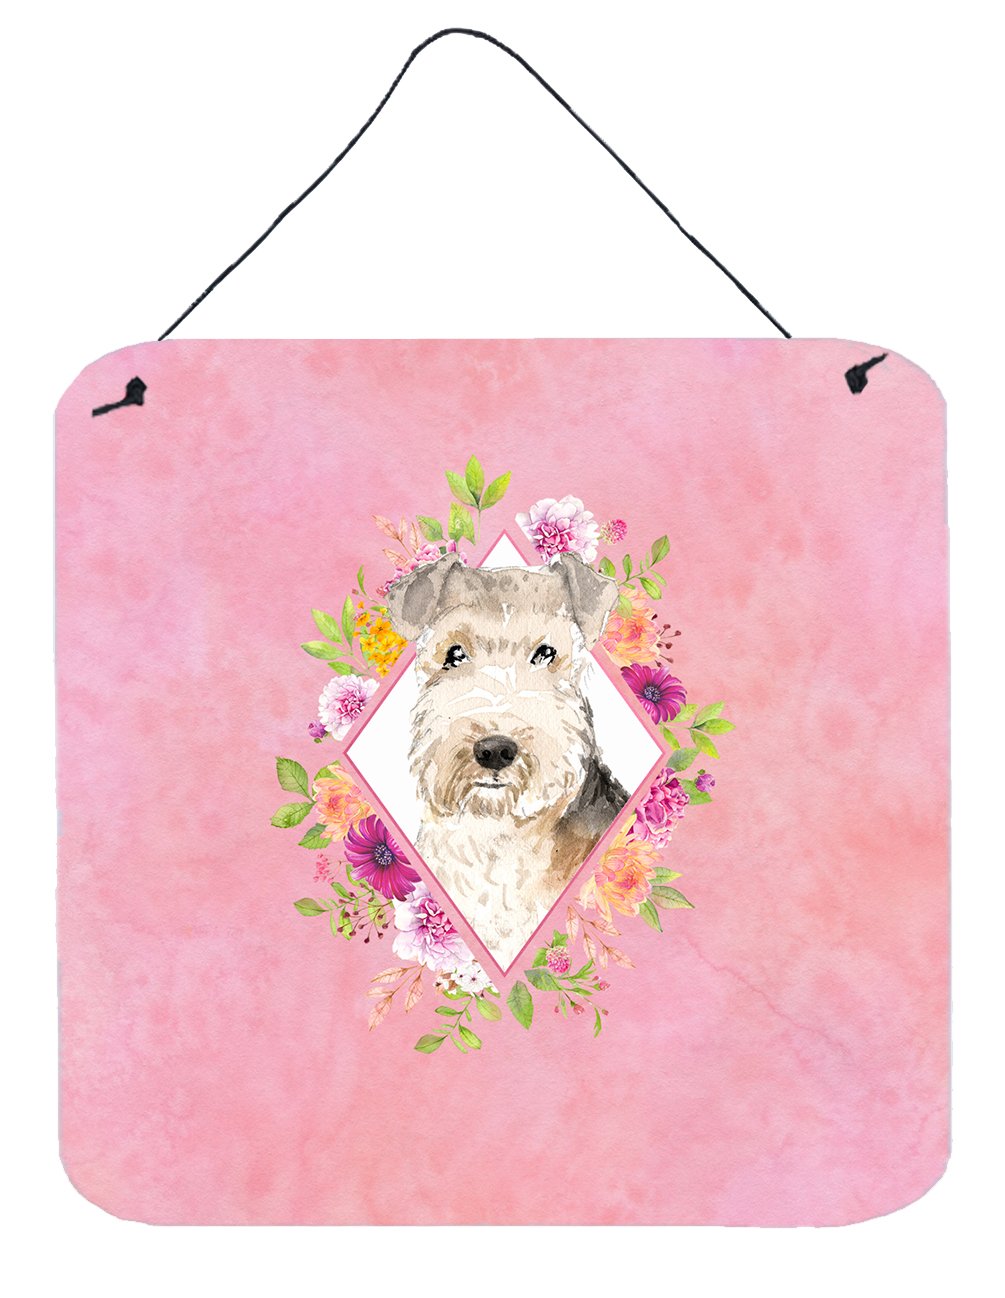 Lakeland Terrier Pink Flowers Wall or Door Hanging Prints CK4226DS66 by Caroline's Treasures